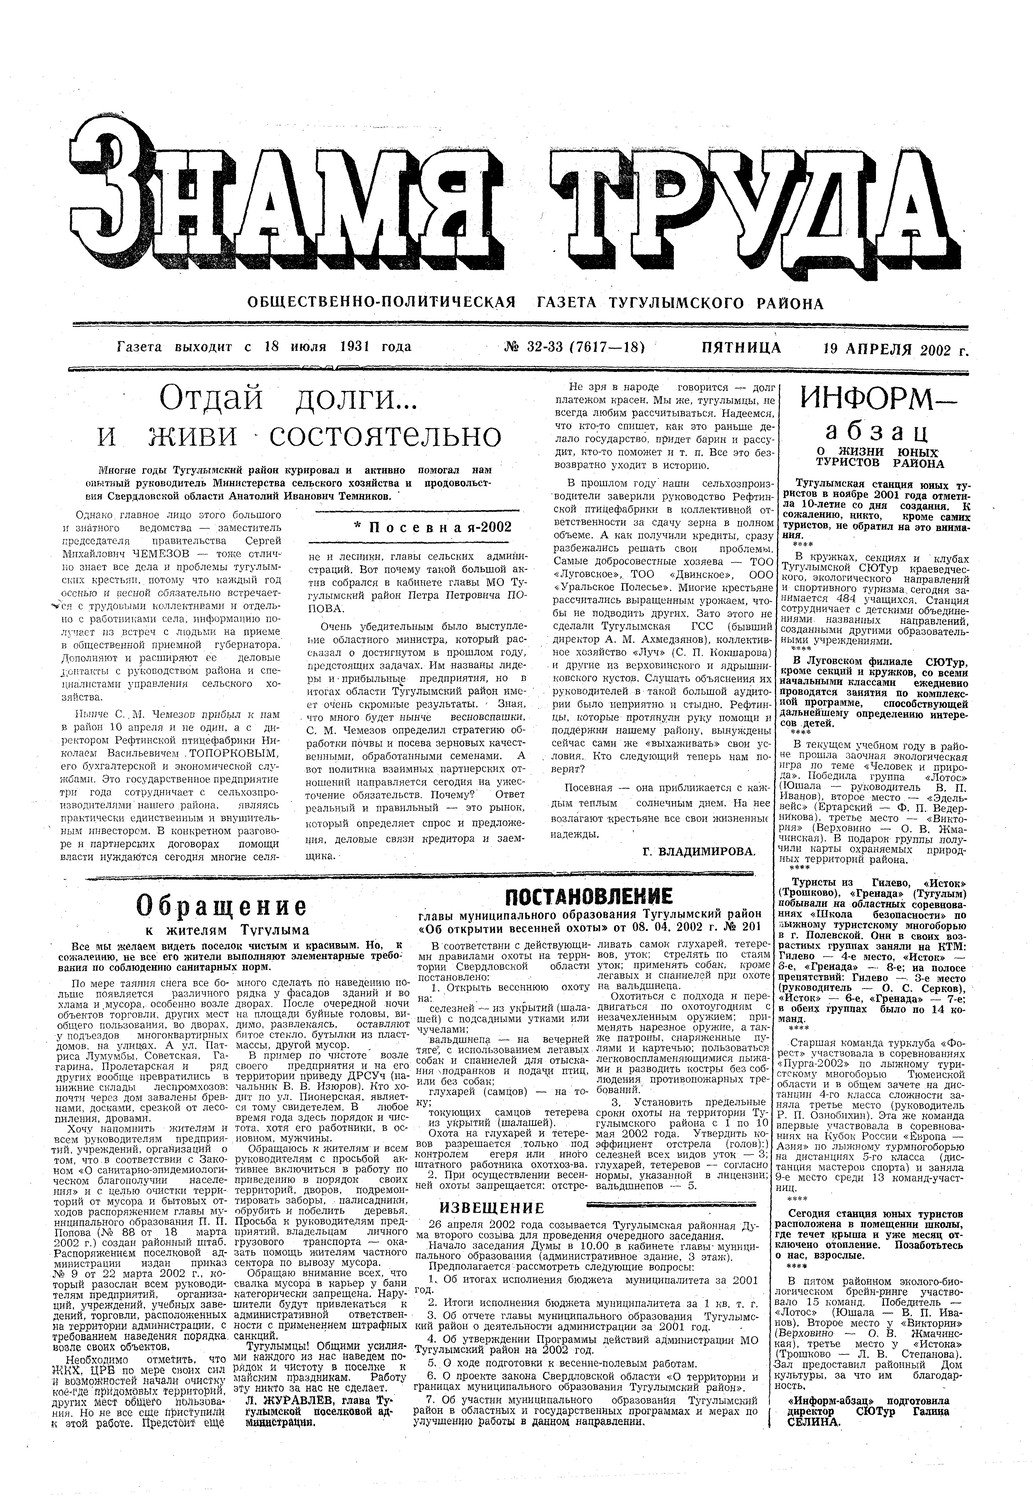 Знамя труда №32-33 от 19 апреля 2002г.